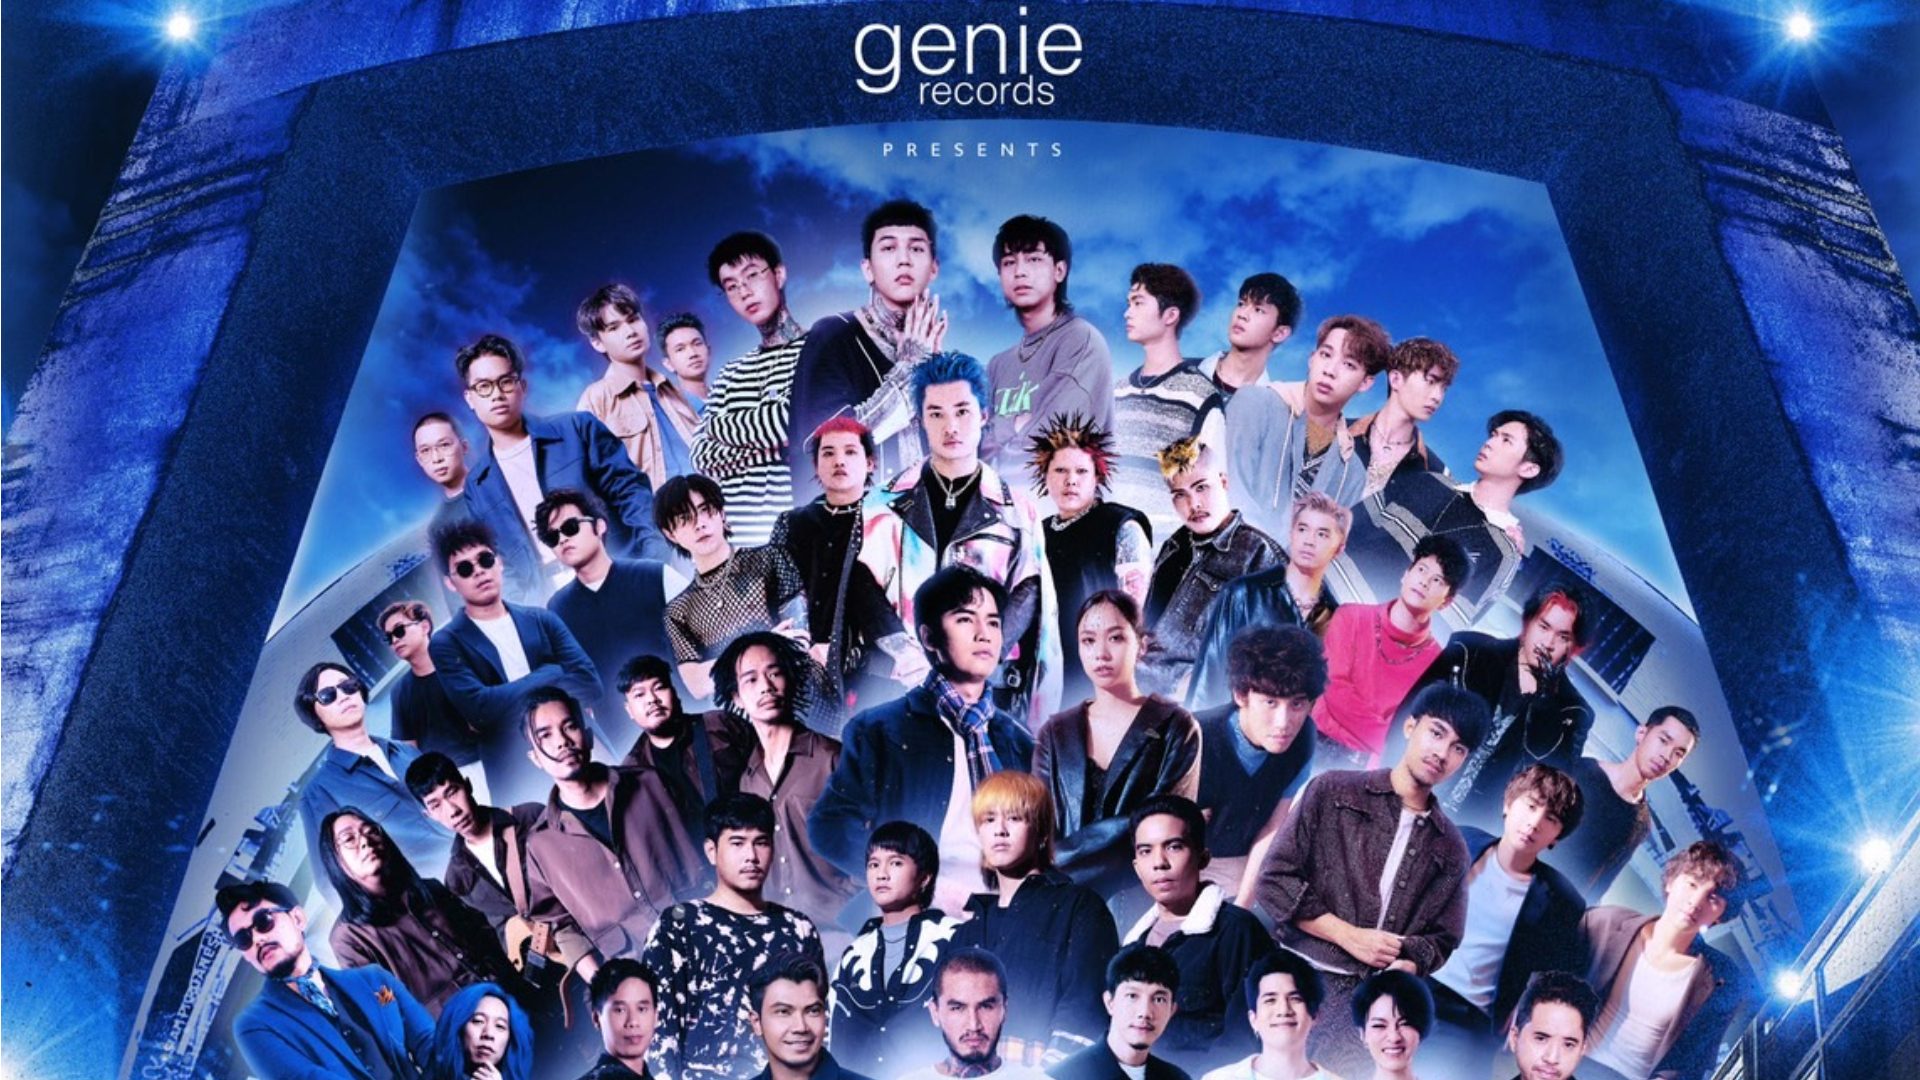 25 กันยายนนี้ จีนี่ฯ ปิดสยาม จัดฟรีคอนเสิร์ต “genie YOUNG PLAY” เปิดบ้านต้อนรับน้องใหม่ พร้อมชวนรุ่นพี่ร่วมแจม